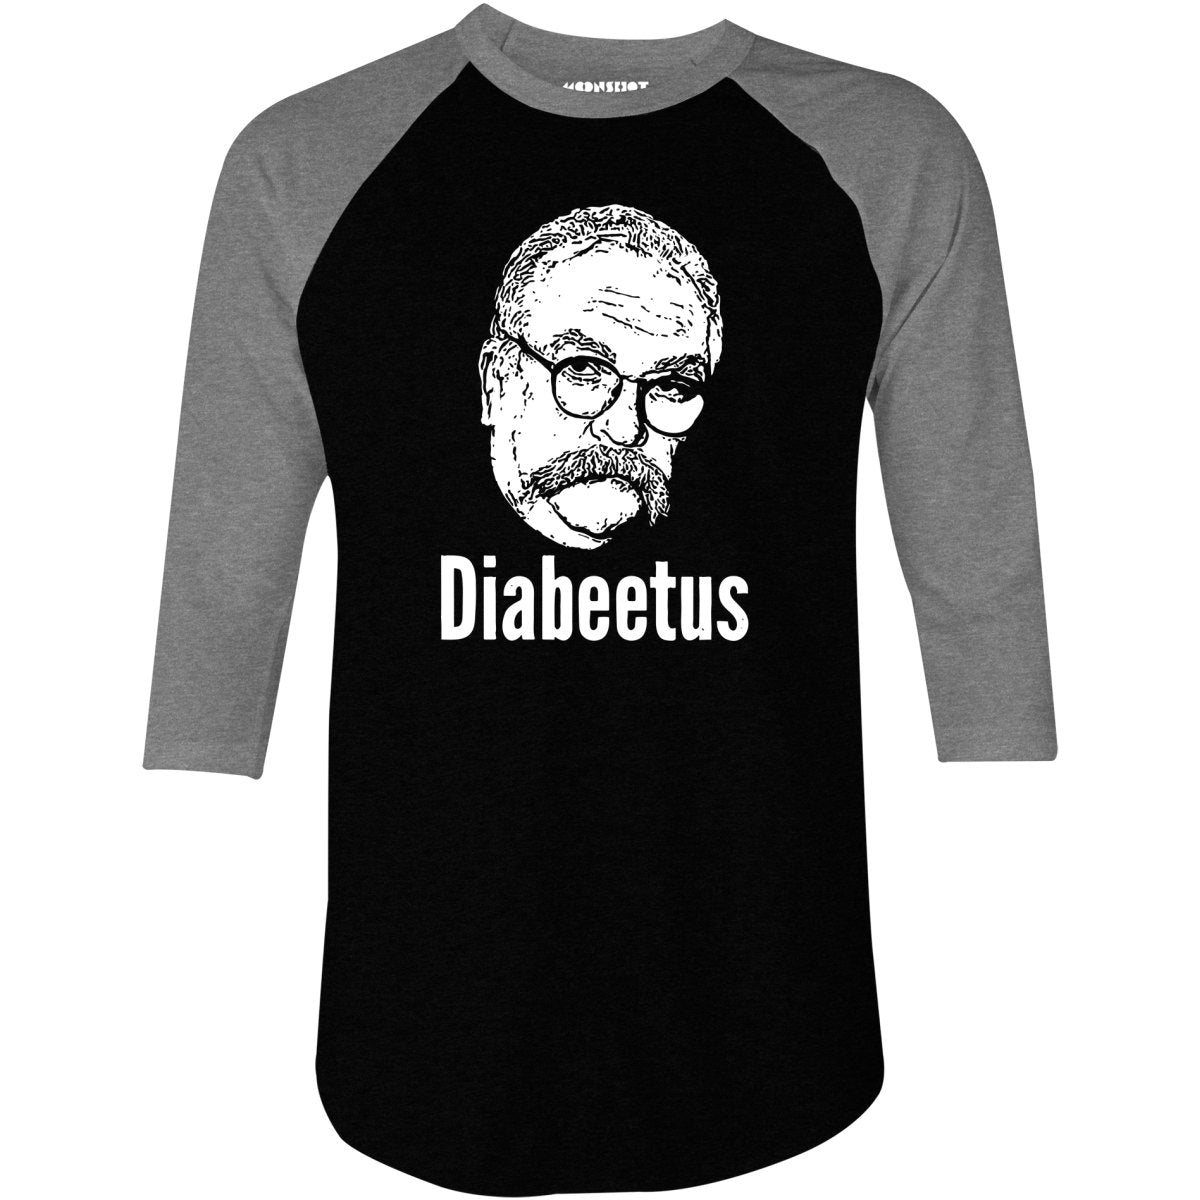 Diabeetus - 3/4 Sleeve Raglan T-Shirt